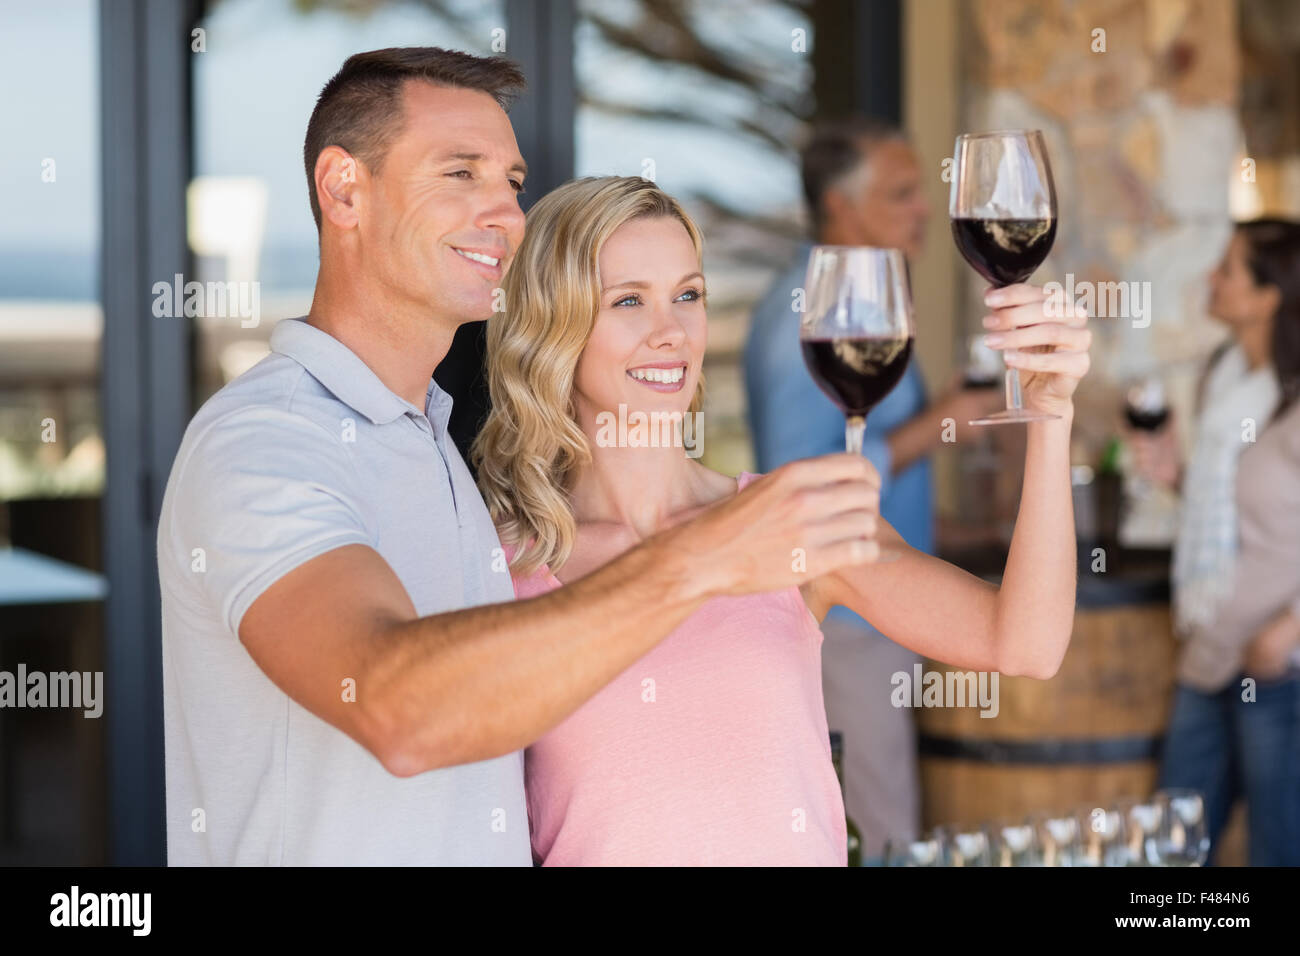 Smiling couple et dégustation de vin debout devant couple drinking wine Banque D'Images